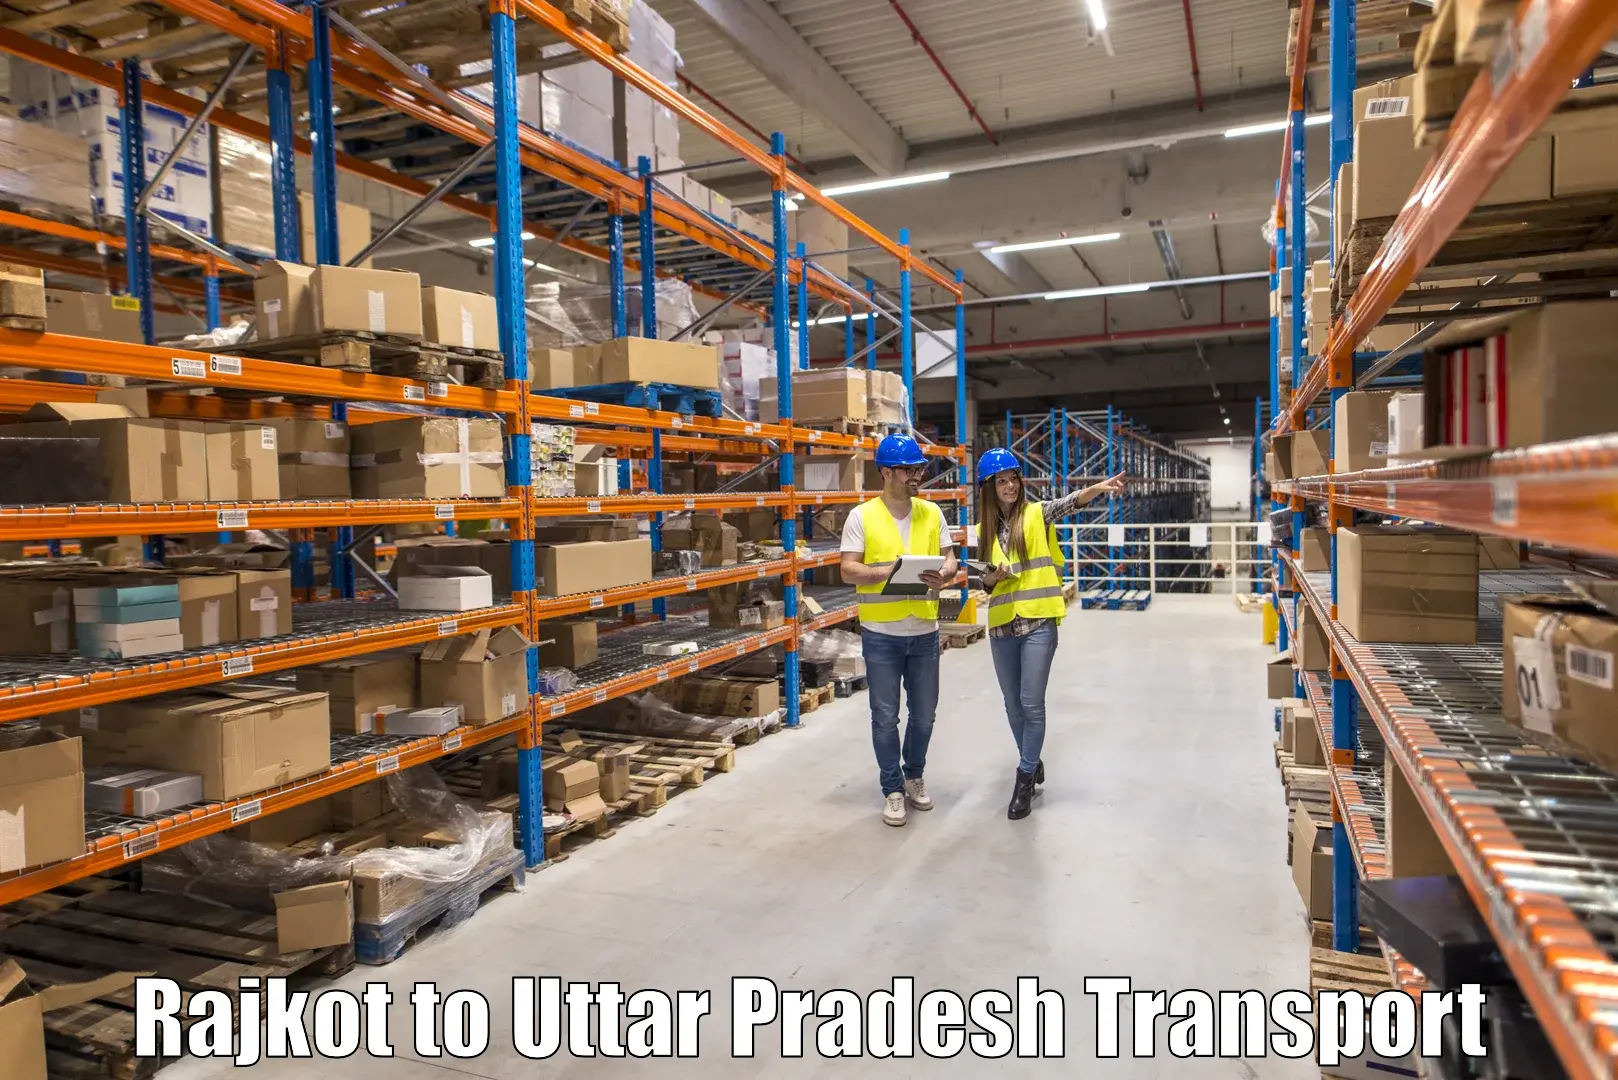 Transport in sharing Rajkot to Chandausi